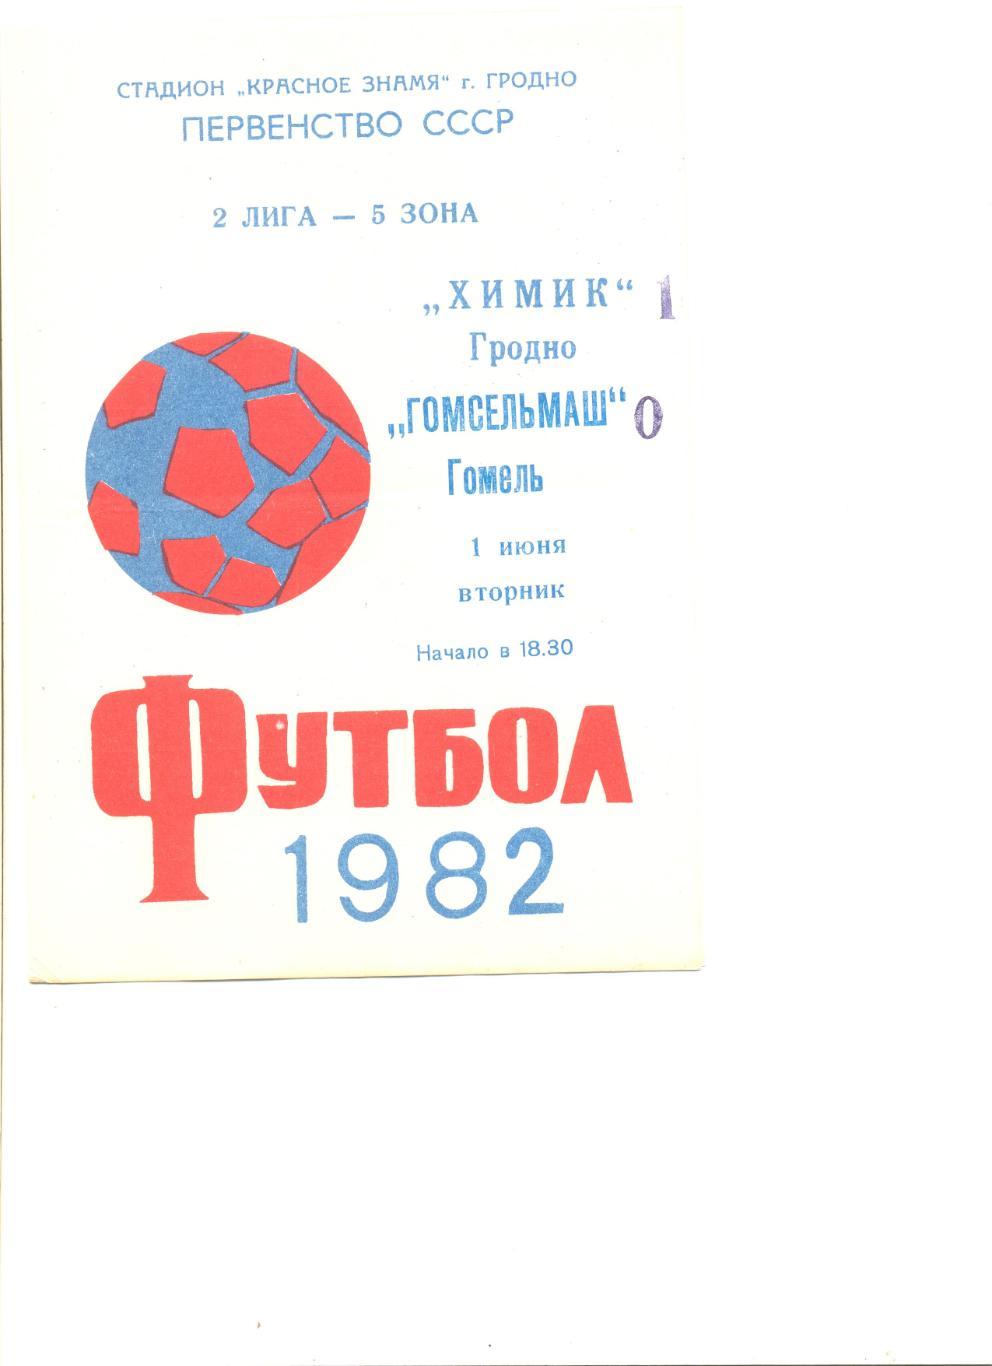 Химик Гродно - Гомсельмаш Гомель 01.06.1982 г.